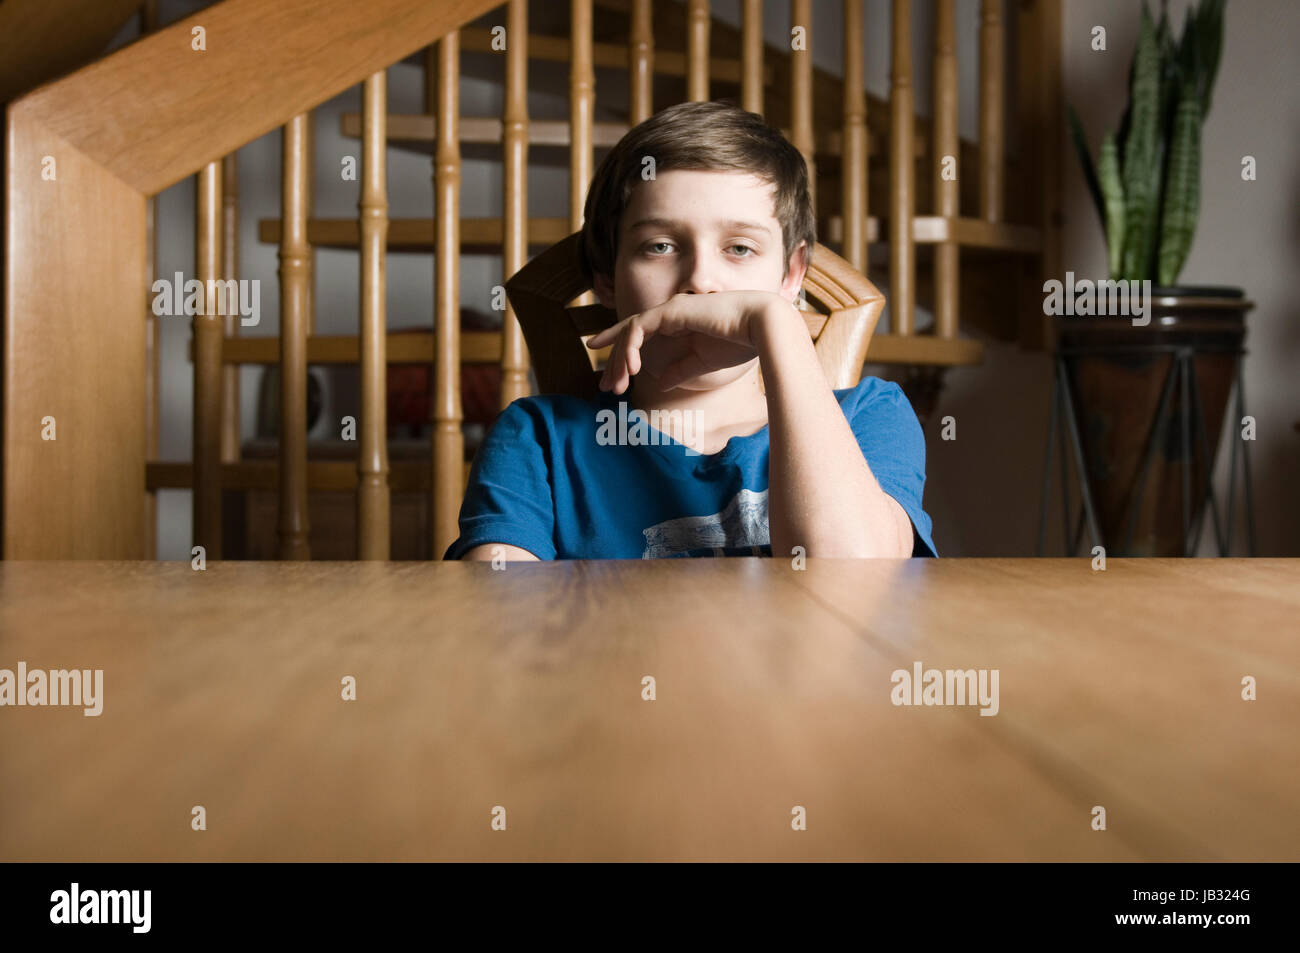 frontale Oberkörper-Ansicht eines jungen männlichen Teenagers im blauen T-Shirt sitzt gelangweilt an einem Holztisch und blickt mit am Mund gehaltener Hand in die Kamera Stock Photo